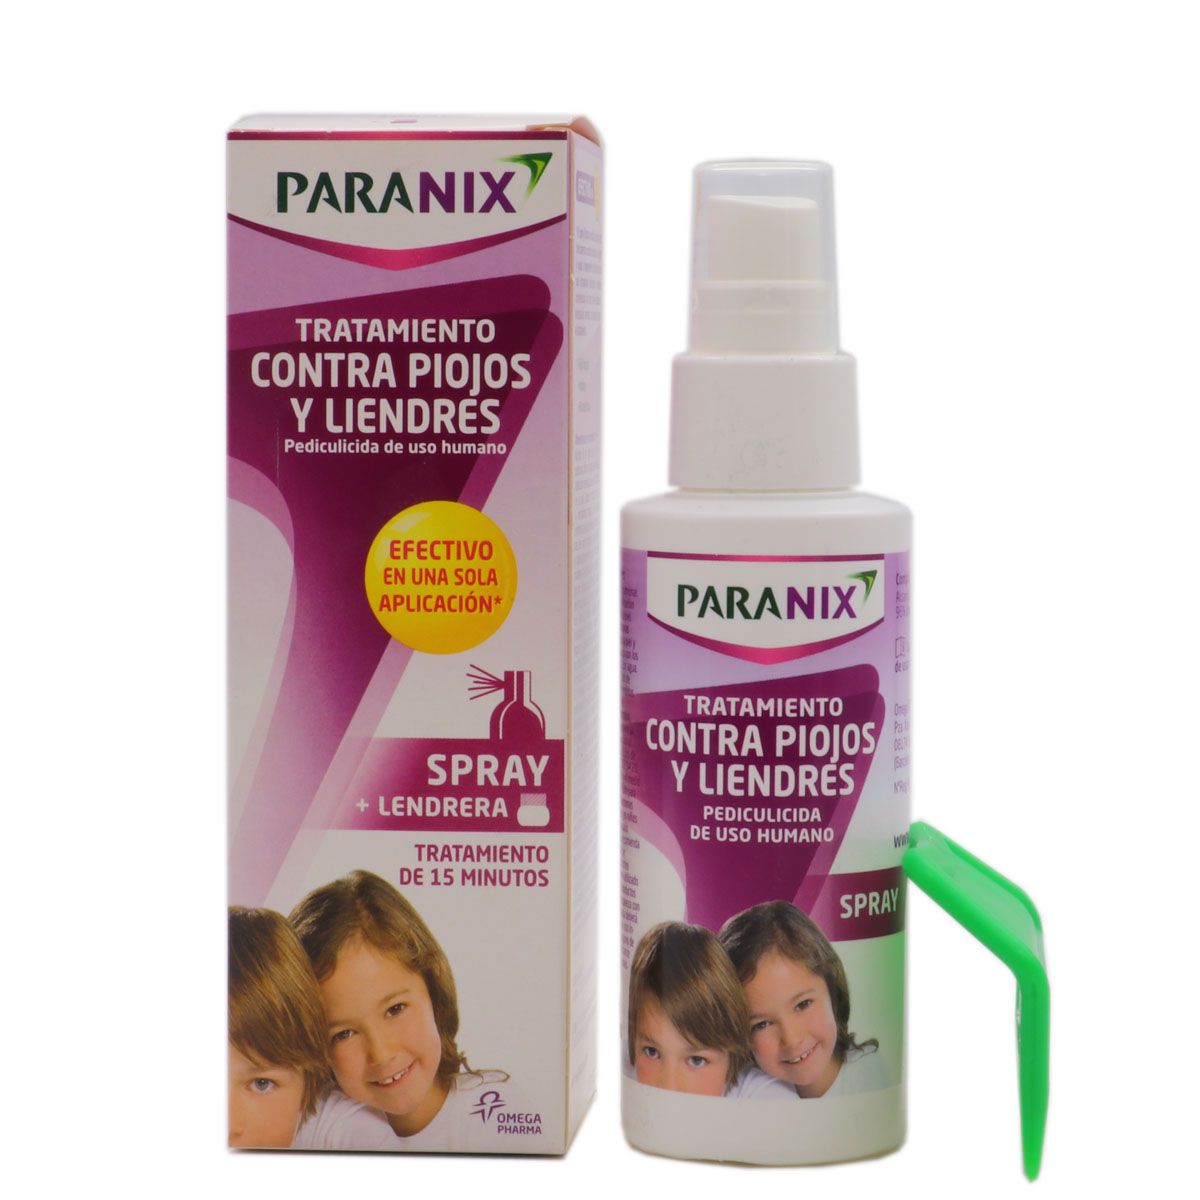 Paranix Spray Tratamiento Contra Piojos y Liendres 100ml+Lendrera